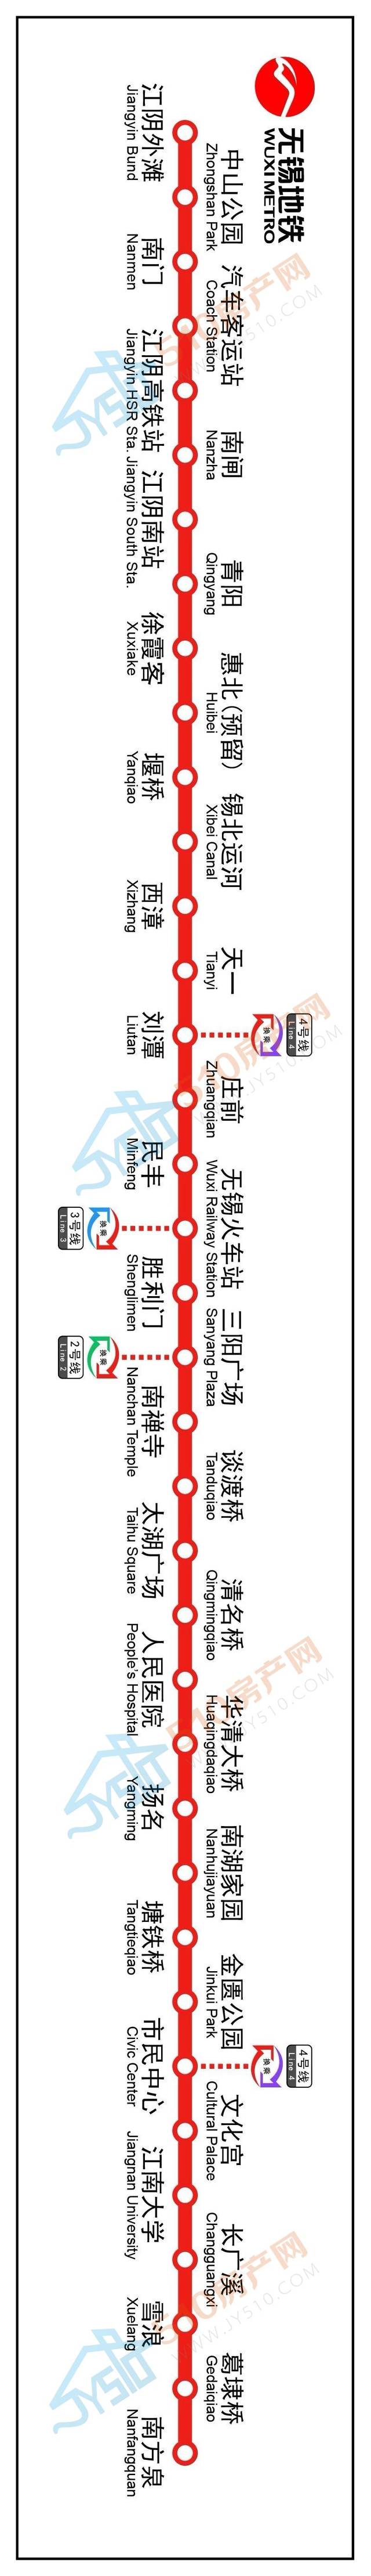 10月17日,江阴首条地铁(锡澄s1无锡